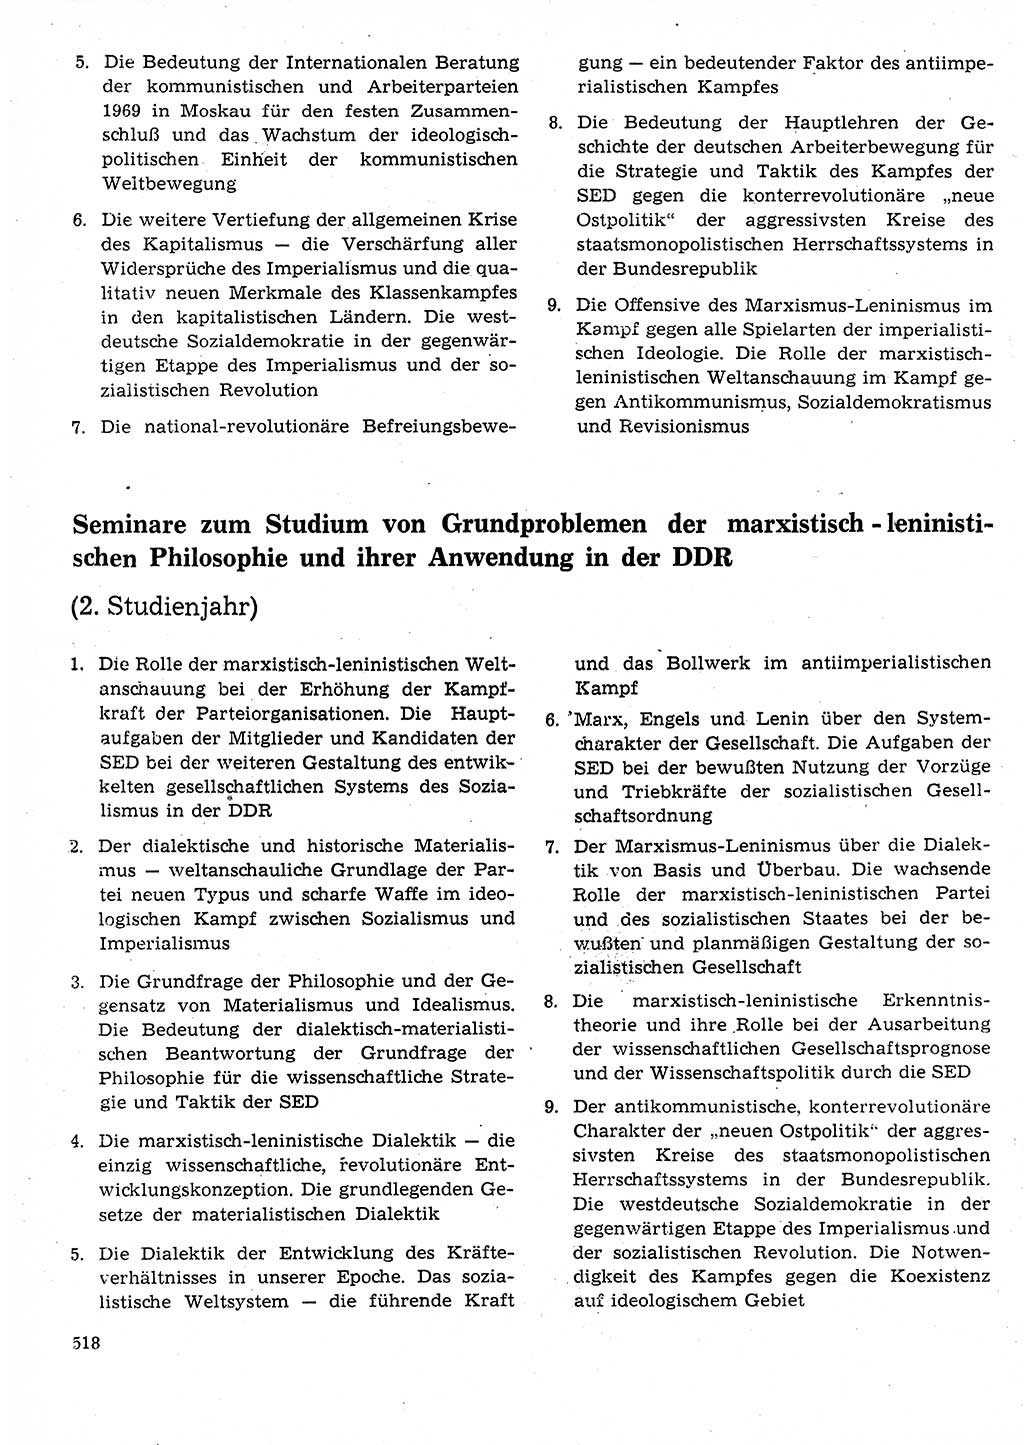 Neuer Weg (NW), Organ des Zentralkomitees (ZK) der SED (Sozialistische Einheitspartei Deutschlands) für Fragen des Parteilebens, 25. Jahrgang [Deutsche Demokratische Republik (DDR)] 1970, Seite 518 (NW ZK SED DDR 1970, S. 518)